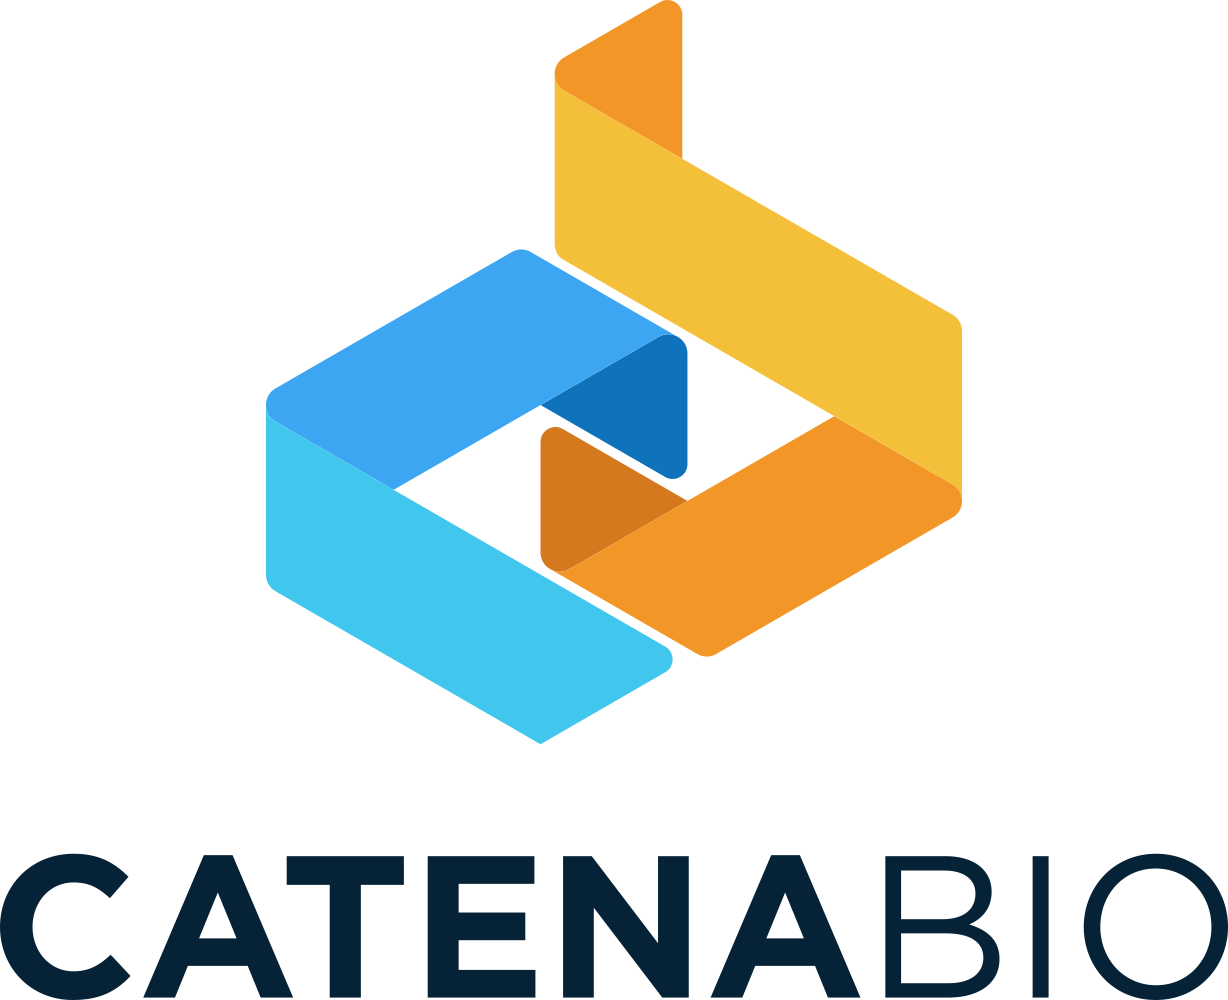 CatenaBio logo